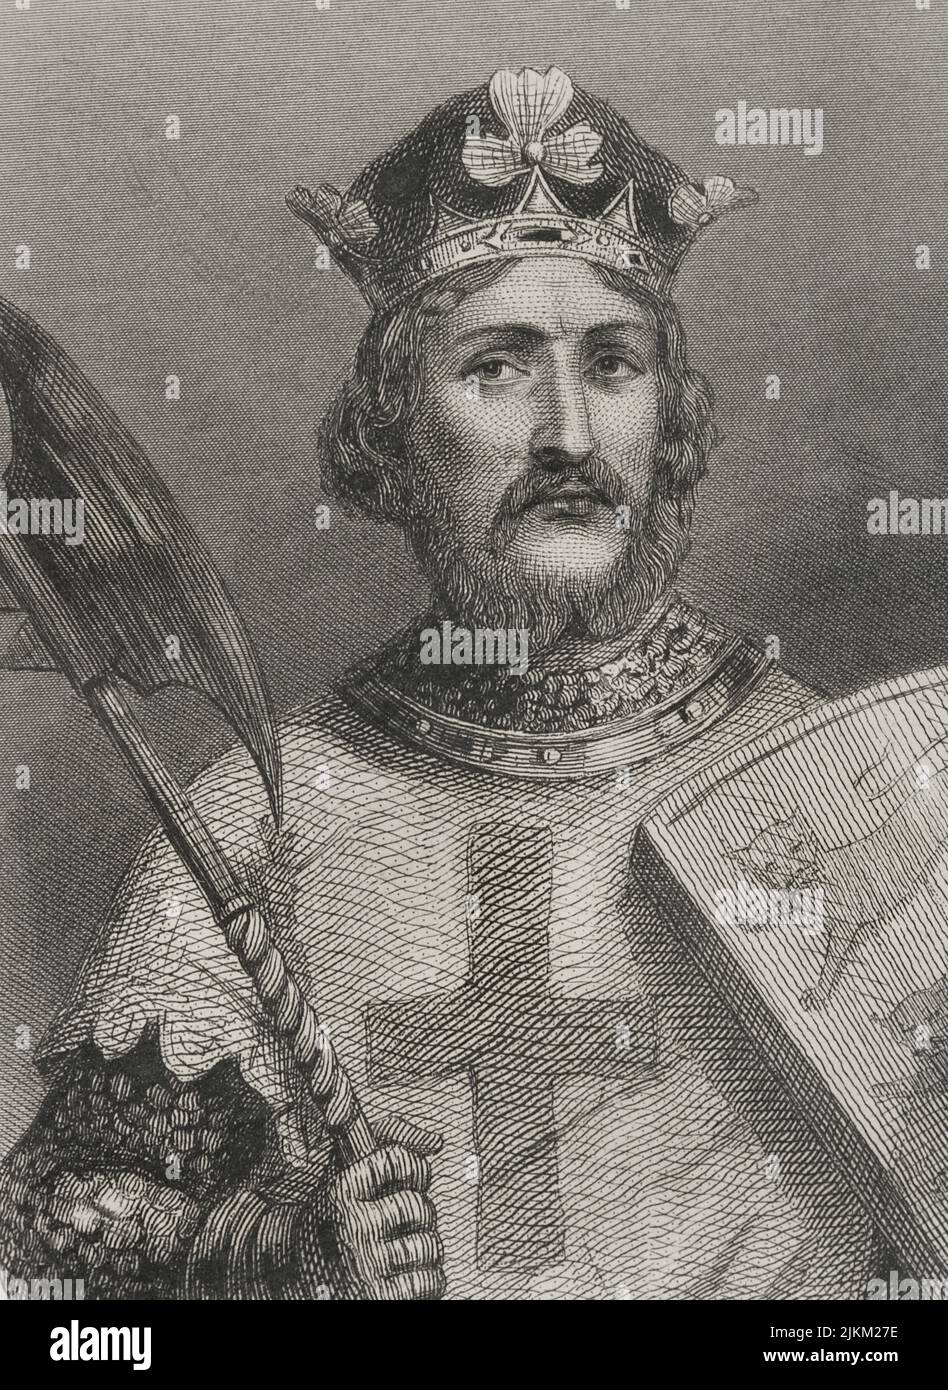 Richard I (1157-1199). Roi d'Angleterre (1189-1199), surnommé Richard cœur de Lion. Maison de Plantagenet. Portrait. Gravure. 'Historia Universal', par César Cantú. Volume III, 1855. Banque D'Images